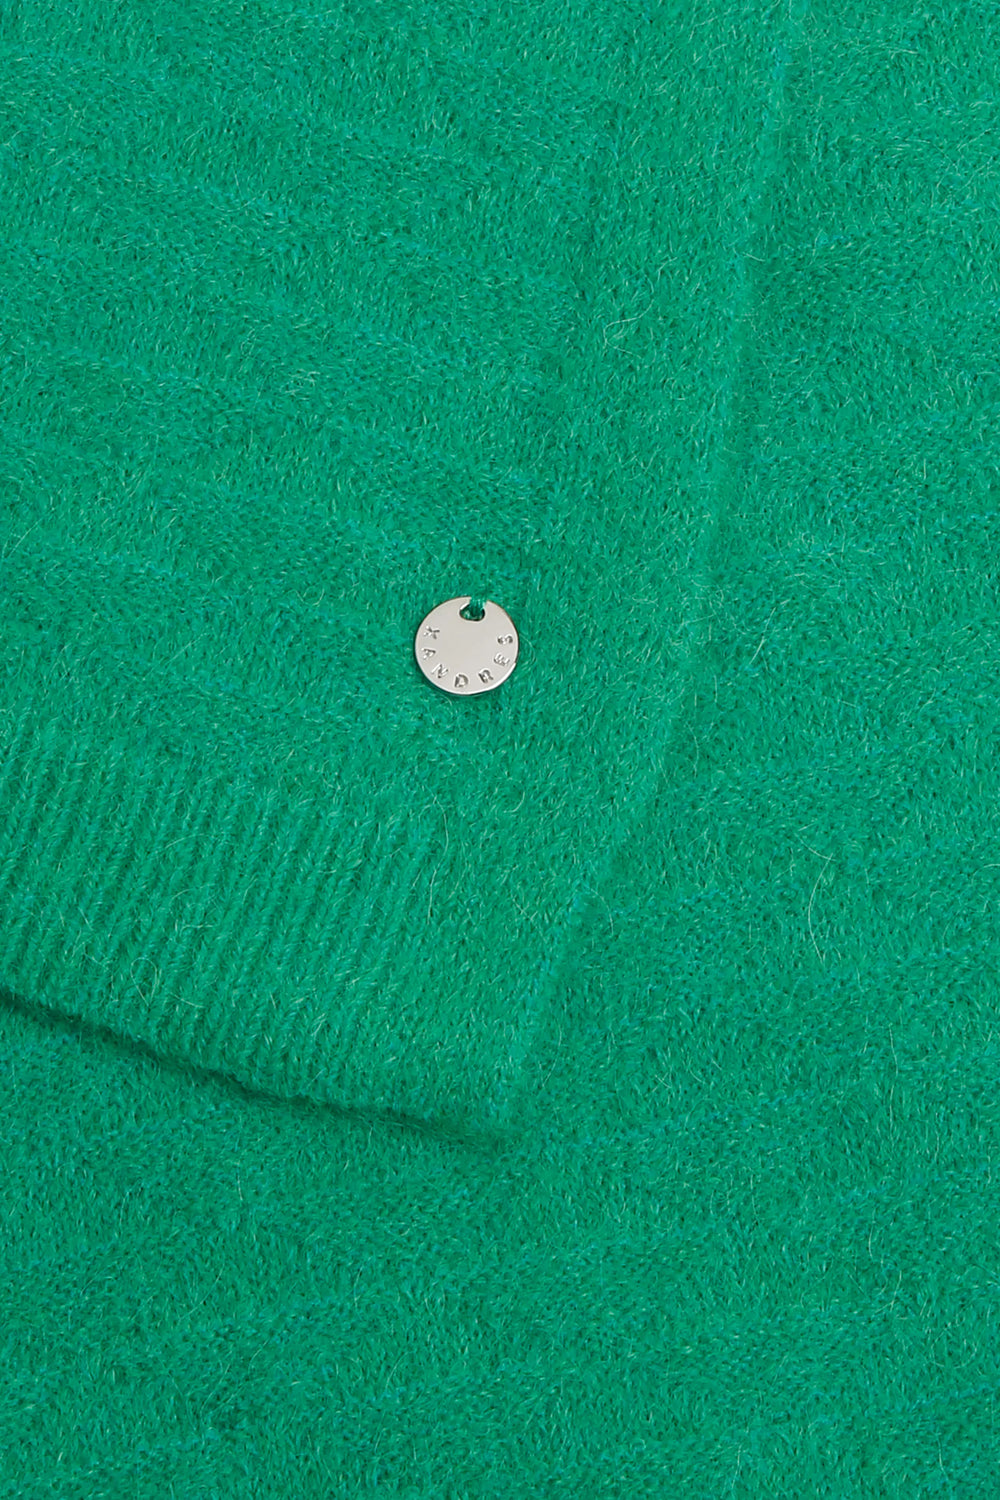 irish green sjaal van alpaca mix - xandres - alenar-groen - grote maten - dameskleding - kledingwinkel - herent - leuven